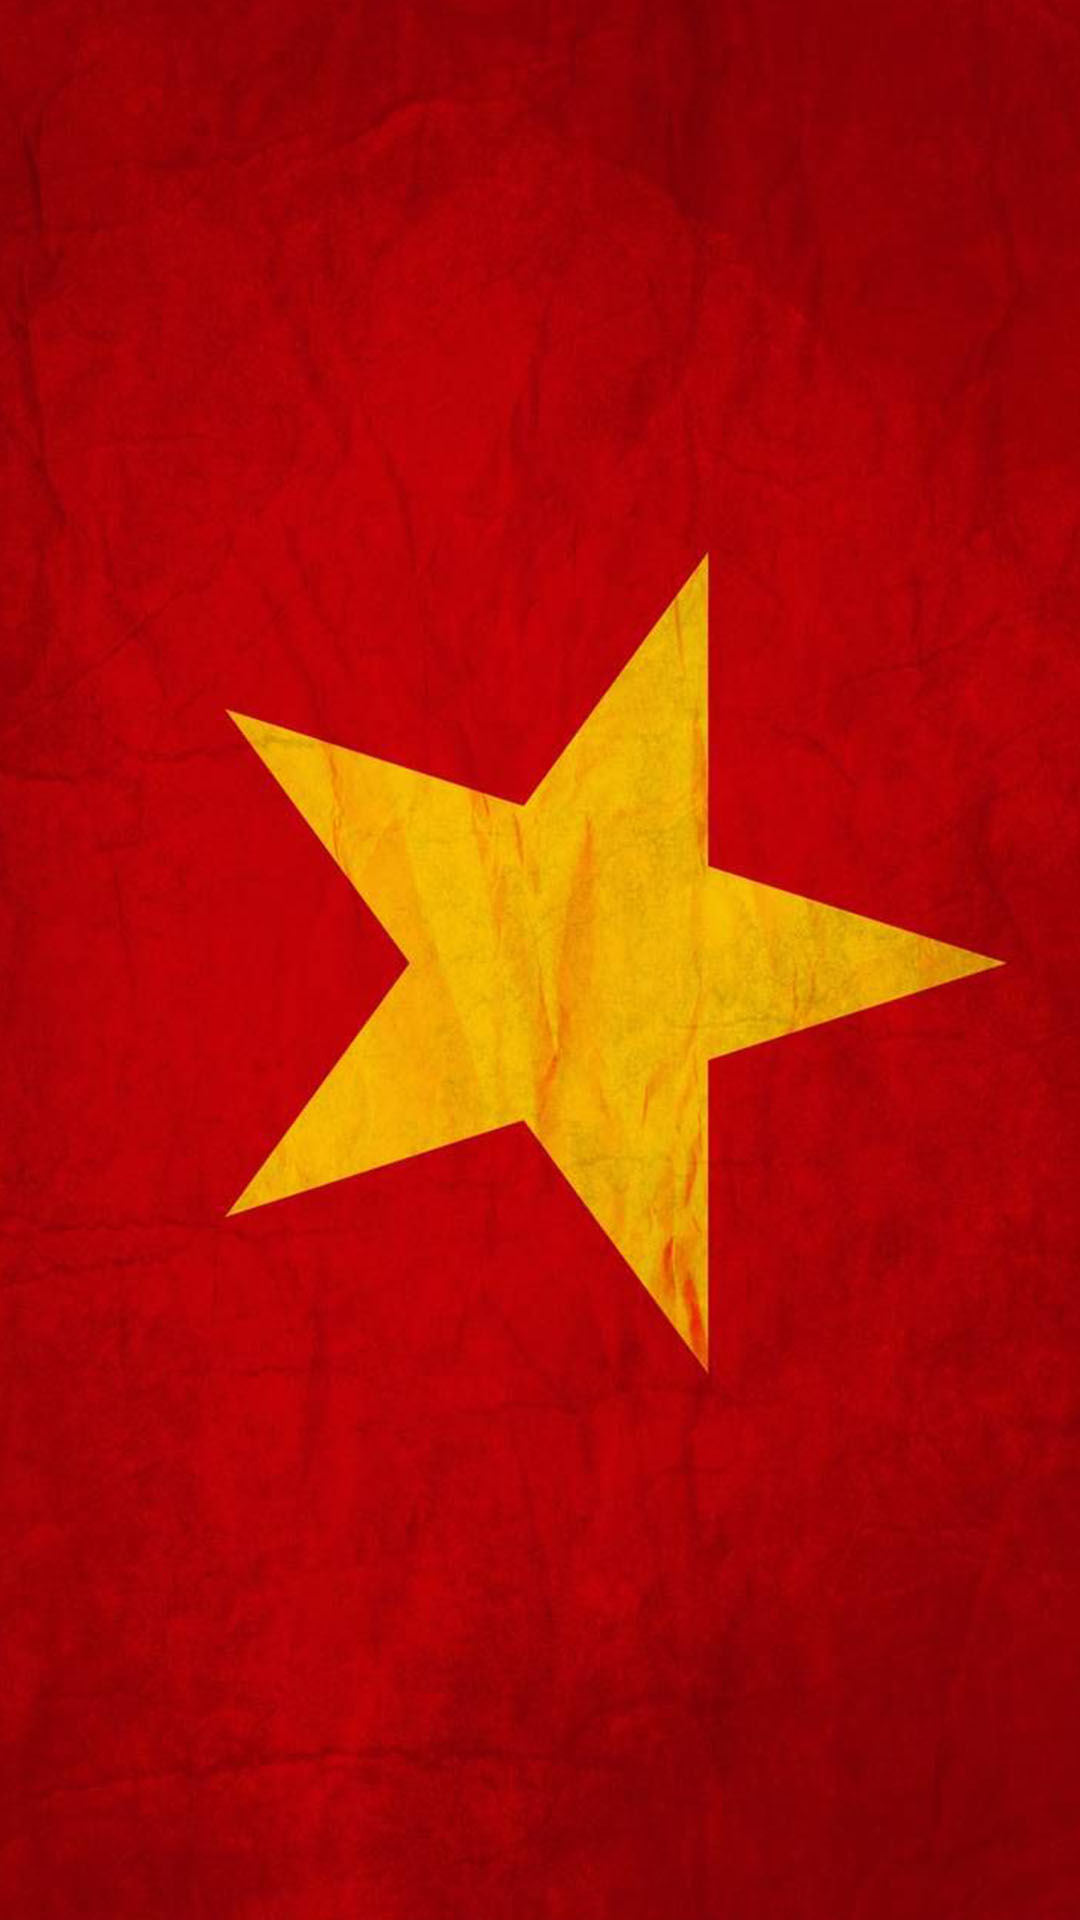 Tuyệt vời! Bạn sẽ không thể bỏ lỡ cơ hội được xem những ảnh cờ Việt Nam 4K chất lượng cao này. Từ các chi tiết nhỏ đến vị trí của mỗi ngôi sao, mọi thứ sẽ được hiển thị một cách rõ ràng và sinh động nhất. Hãy cùng nhau tận hưởng vẻ đẹp đến từ biểu tượng dân tộc này.